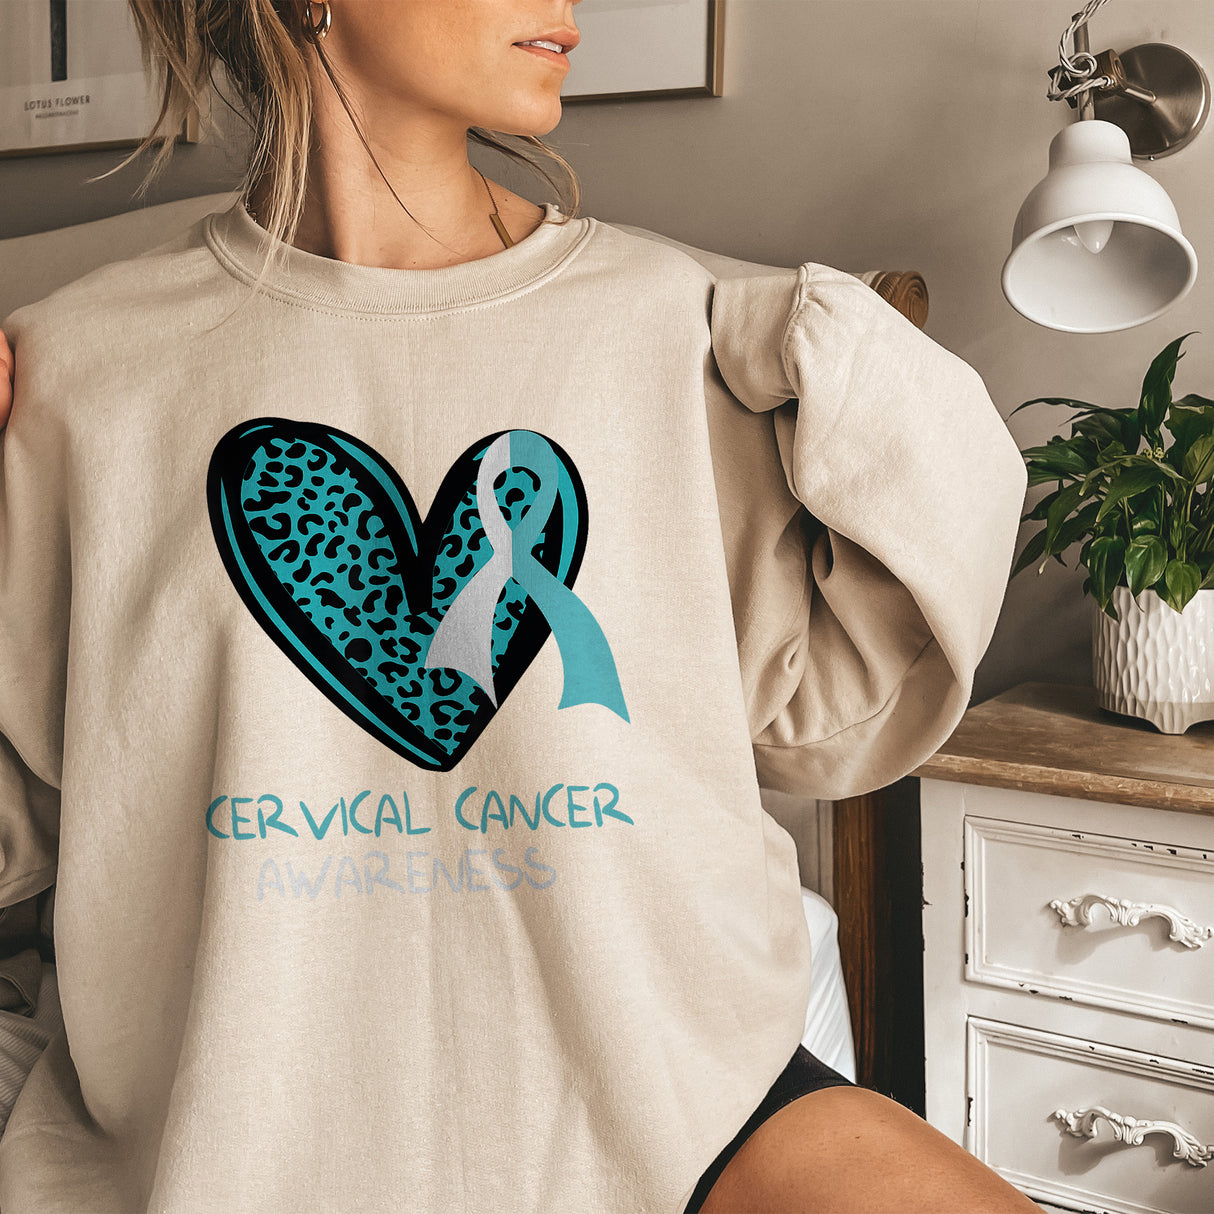 Cervical Cancer Awareness Adult Sweatshirt